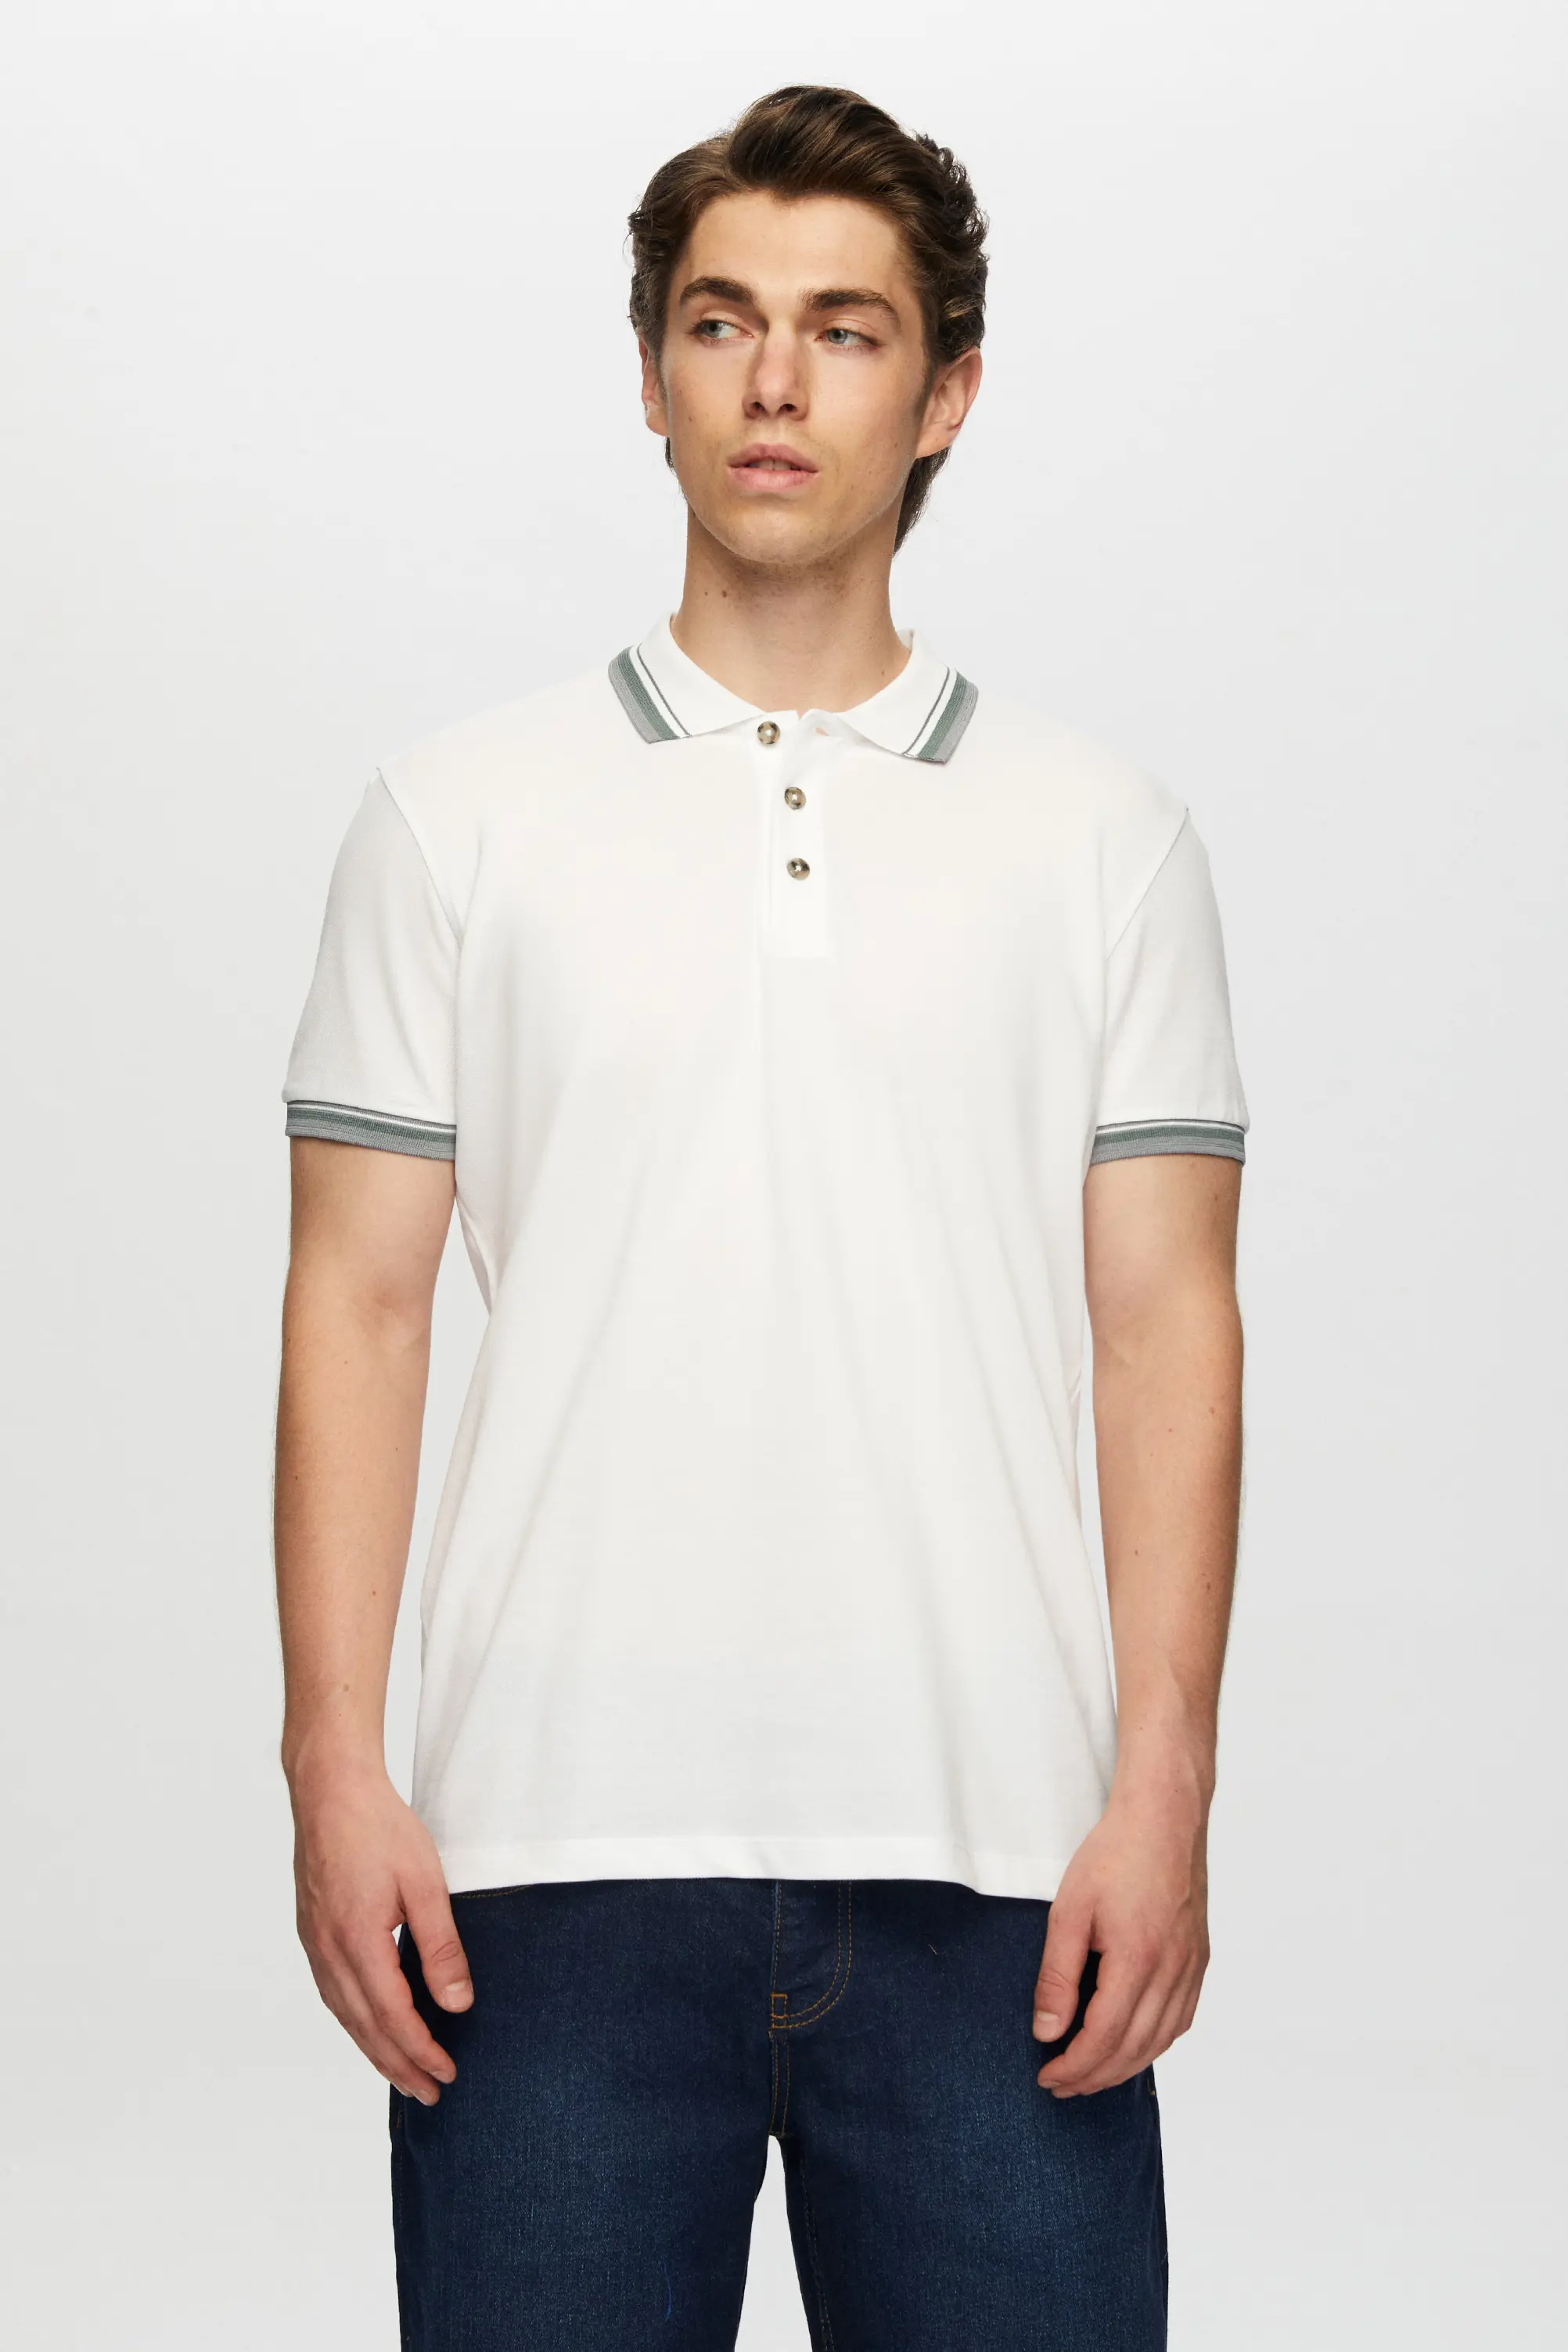 Damat Tween Tween Beyaz Düğmeli Polo Yaka T-Shirt. 1